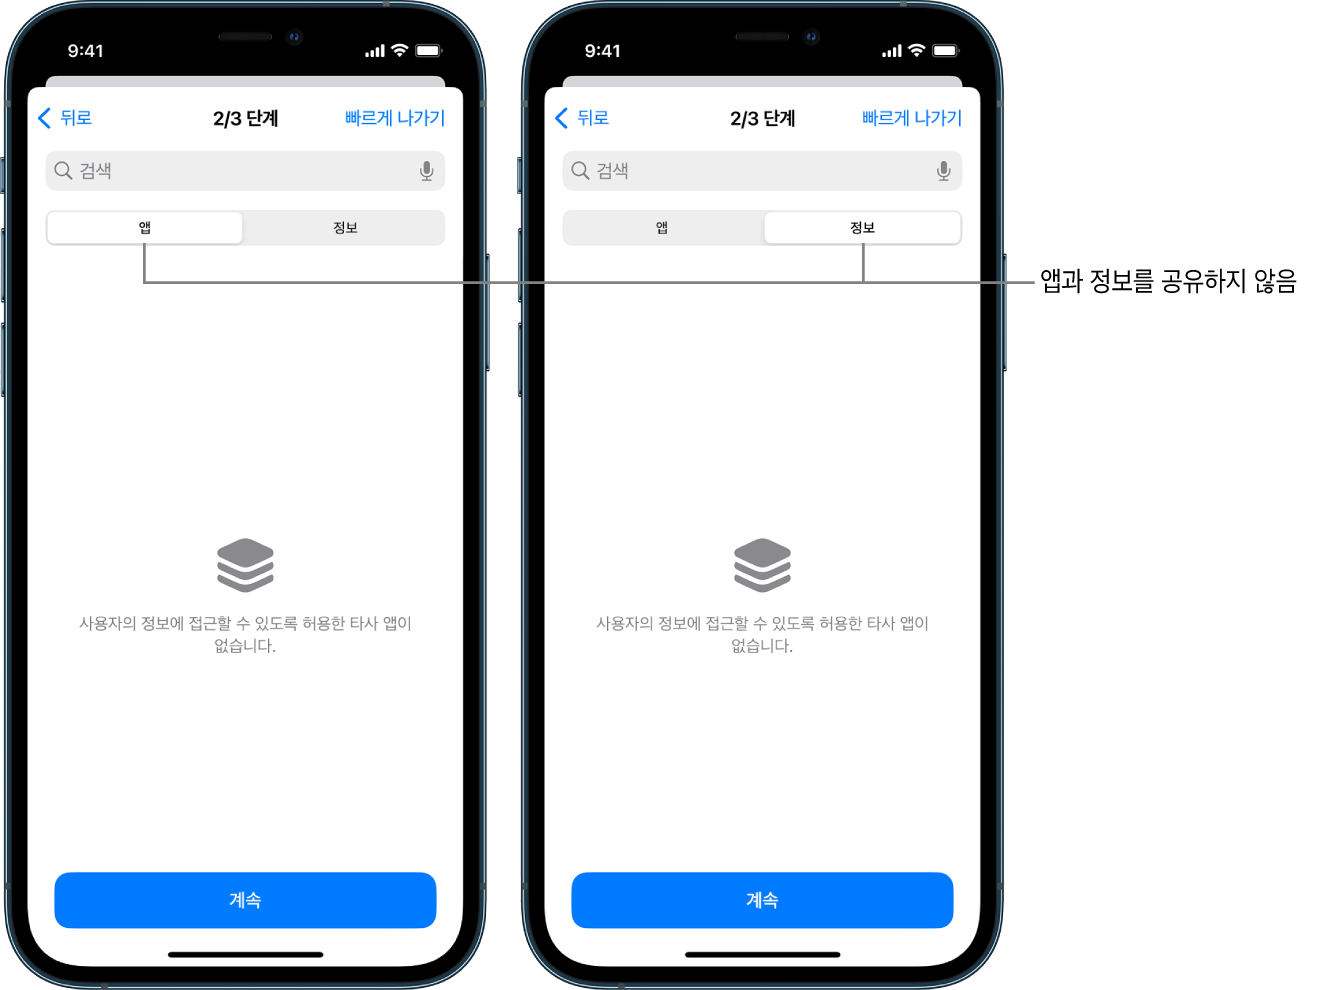 앱 및 정보 탭을 선택하여 사용자가 다른 앱과 정보를 공유하지 않음을 표시하는 화면.